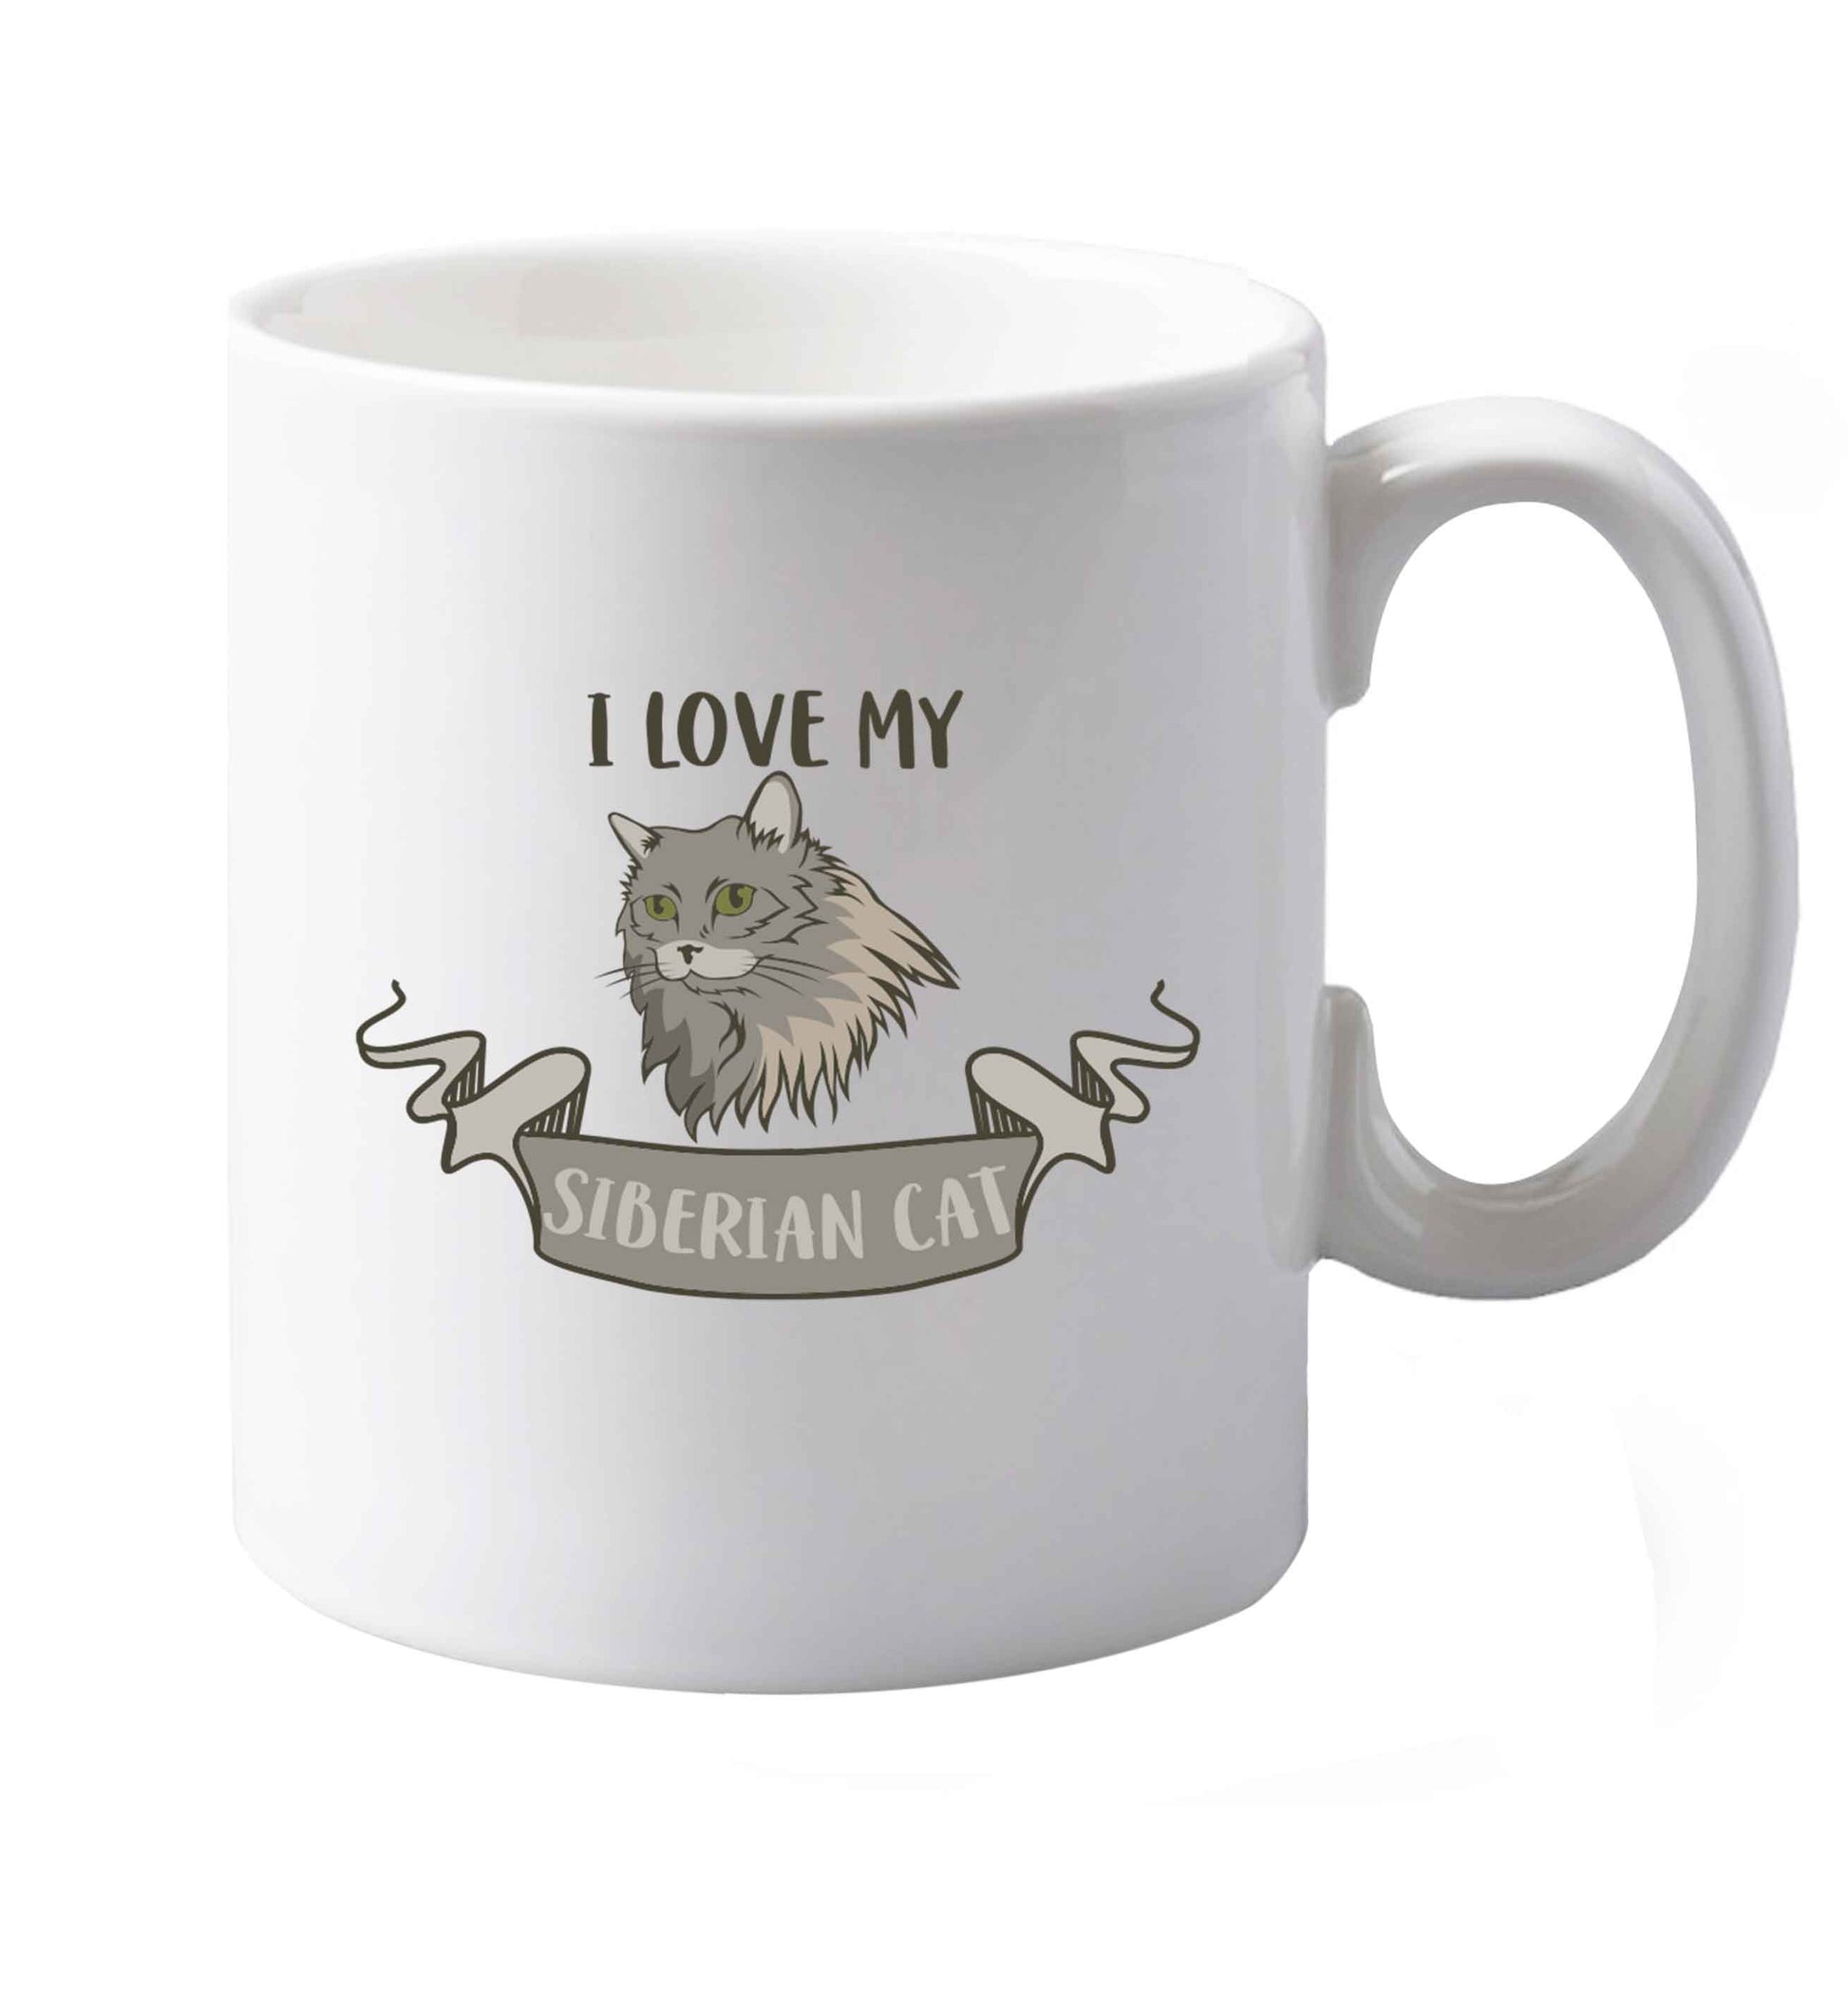 10 oz I love my siberian cat ceramic mug both sides